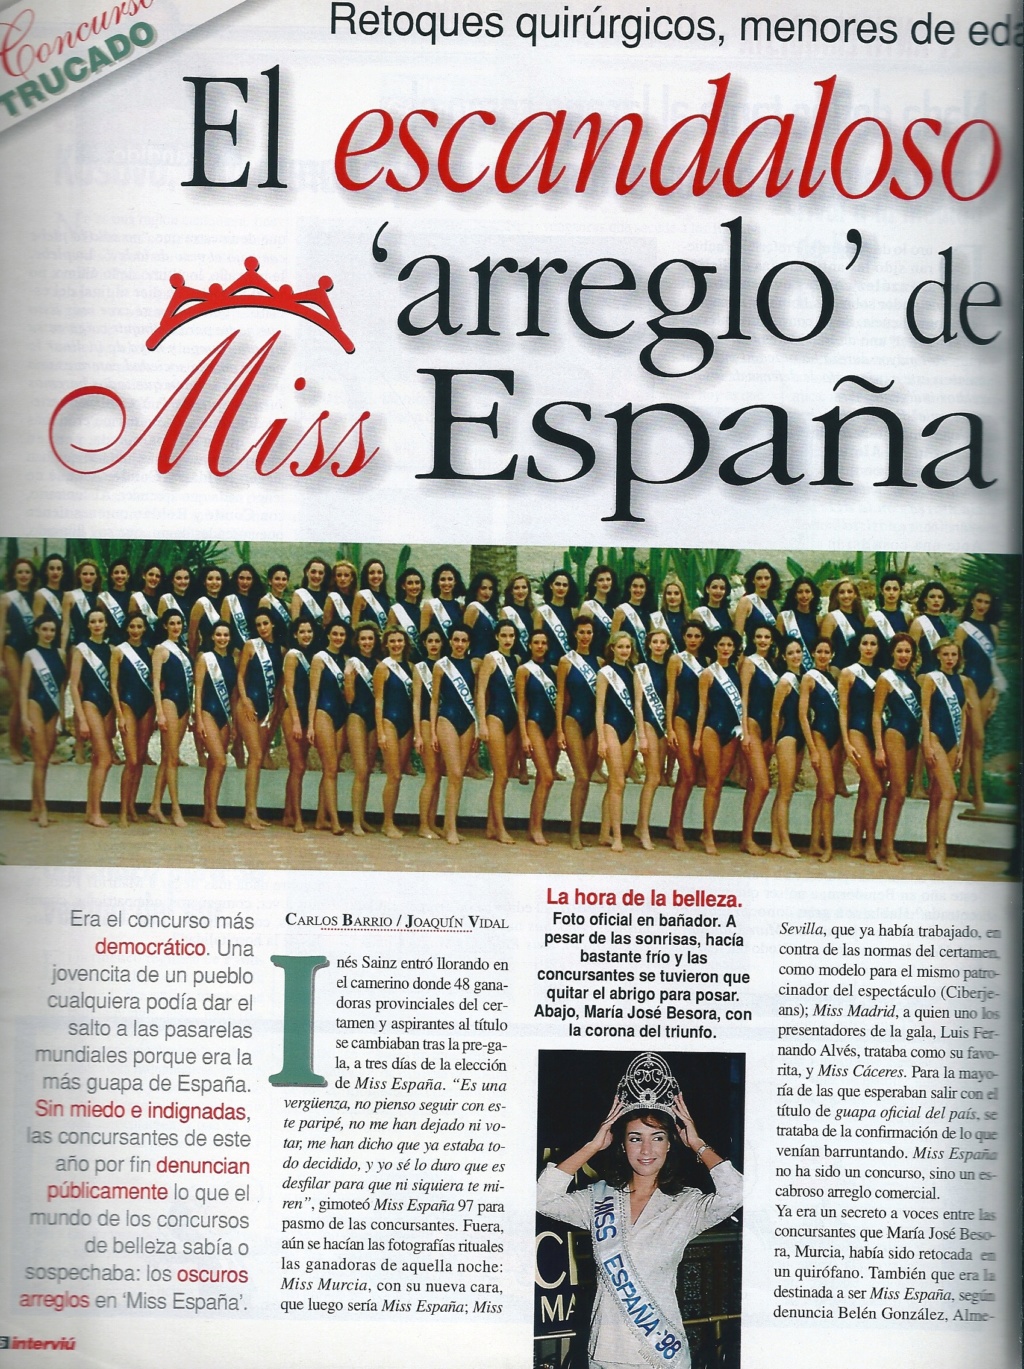 COMENTANDO... Miss España 1998 - Página 2 110